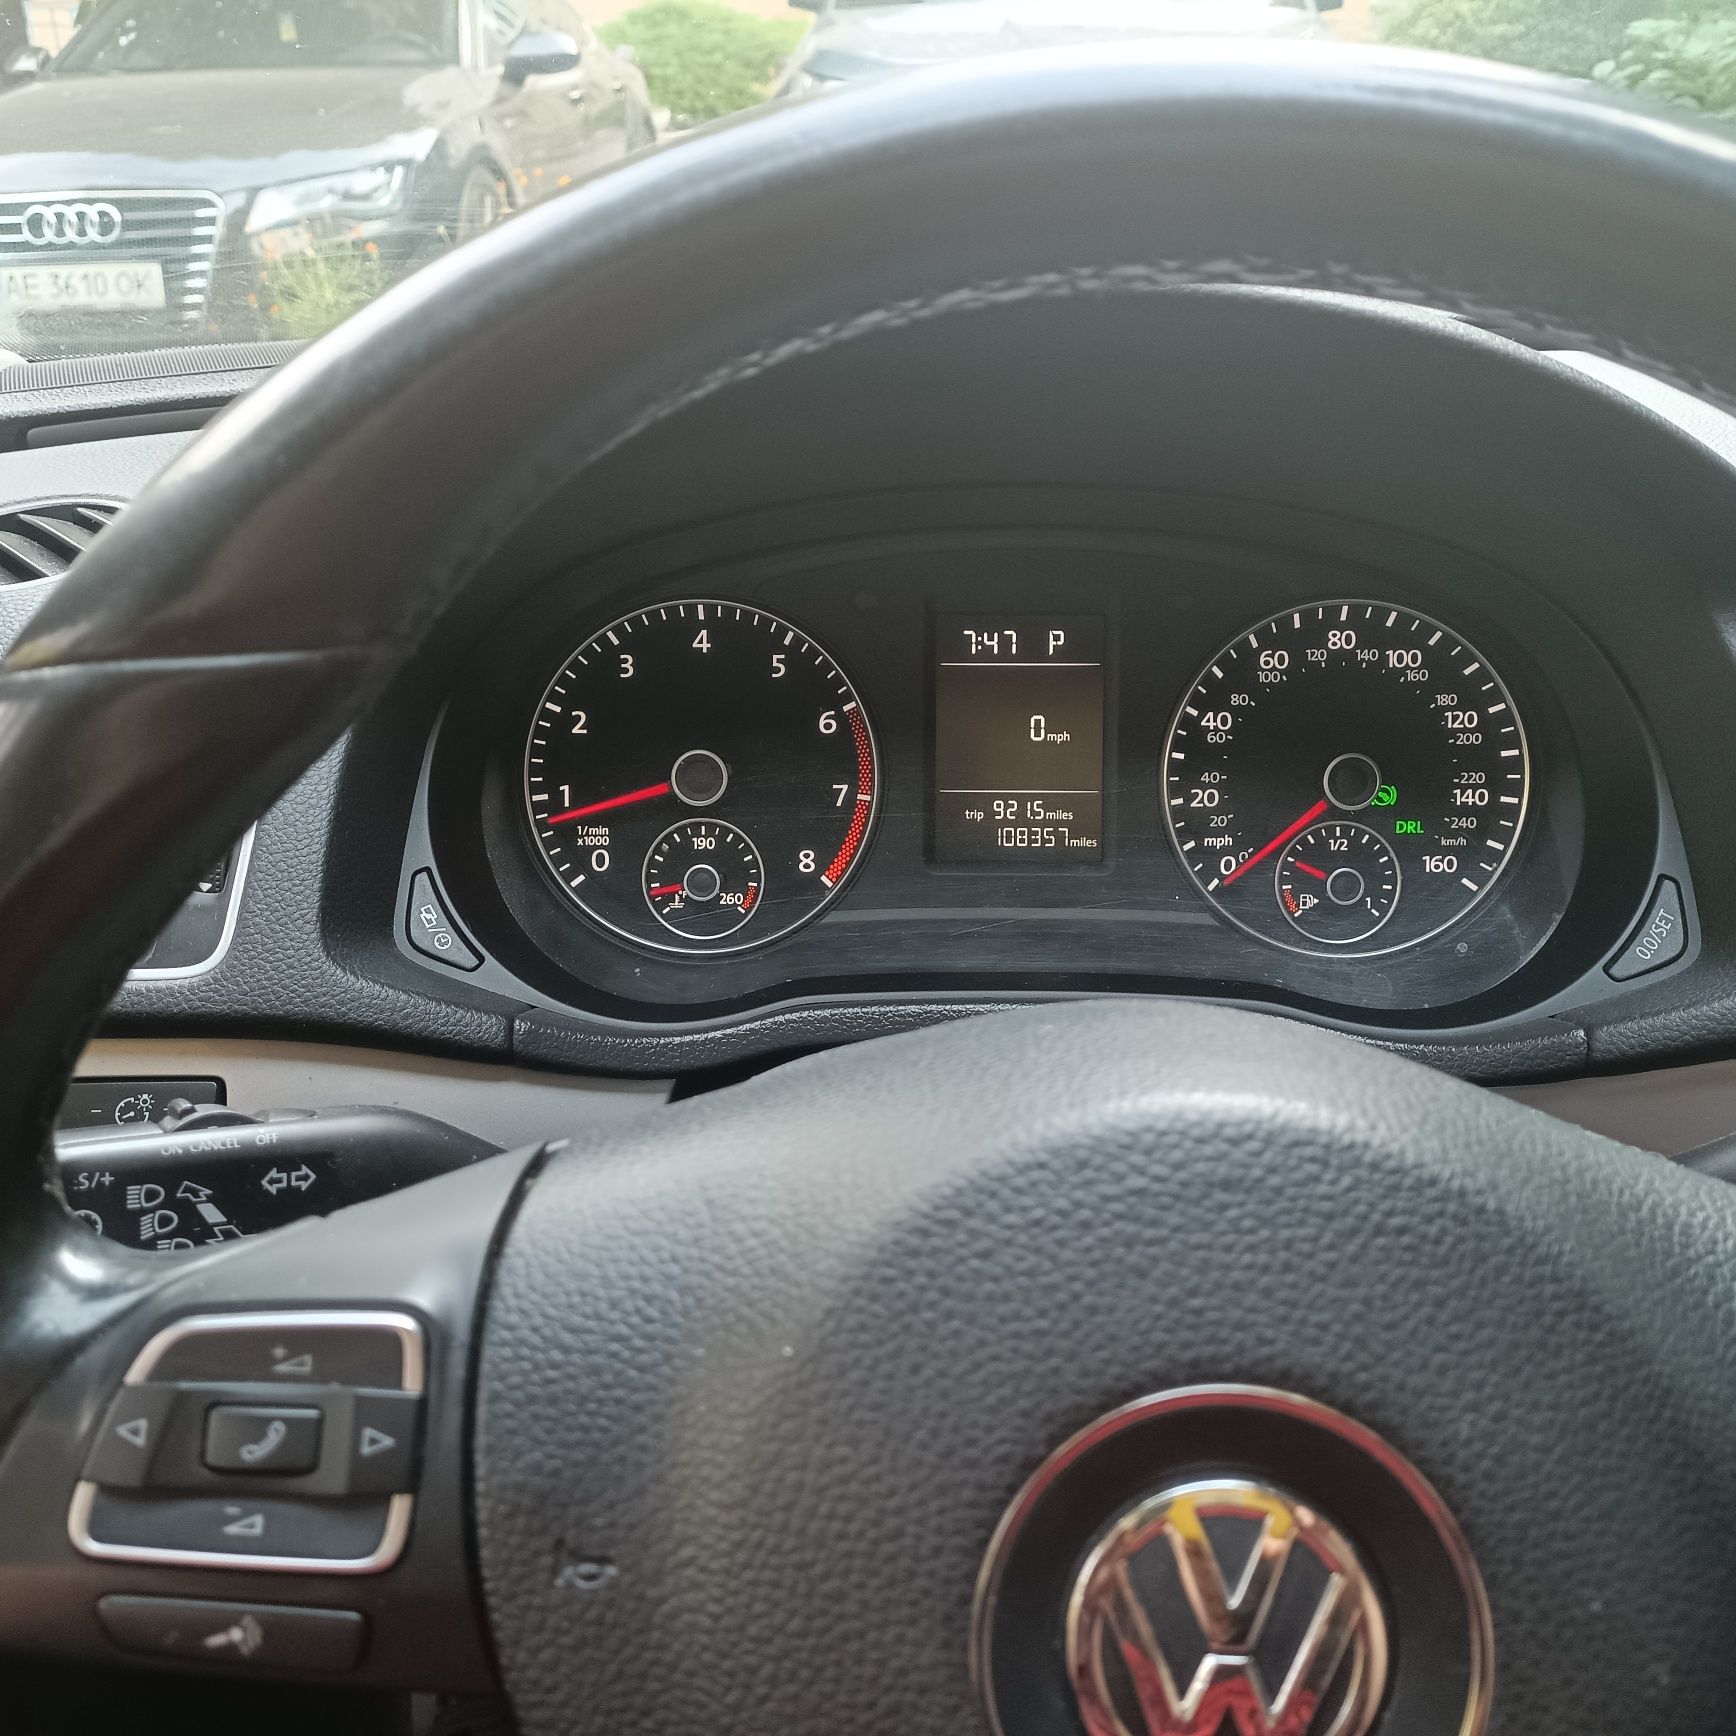 Volkswagen Passat B7, 1.8 TSI, 2014г.в.